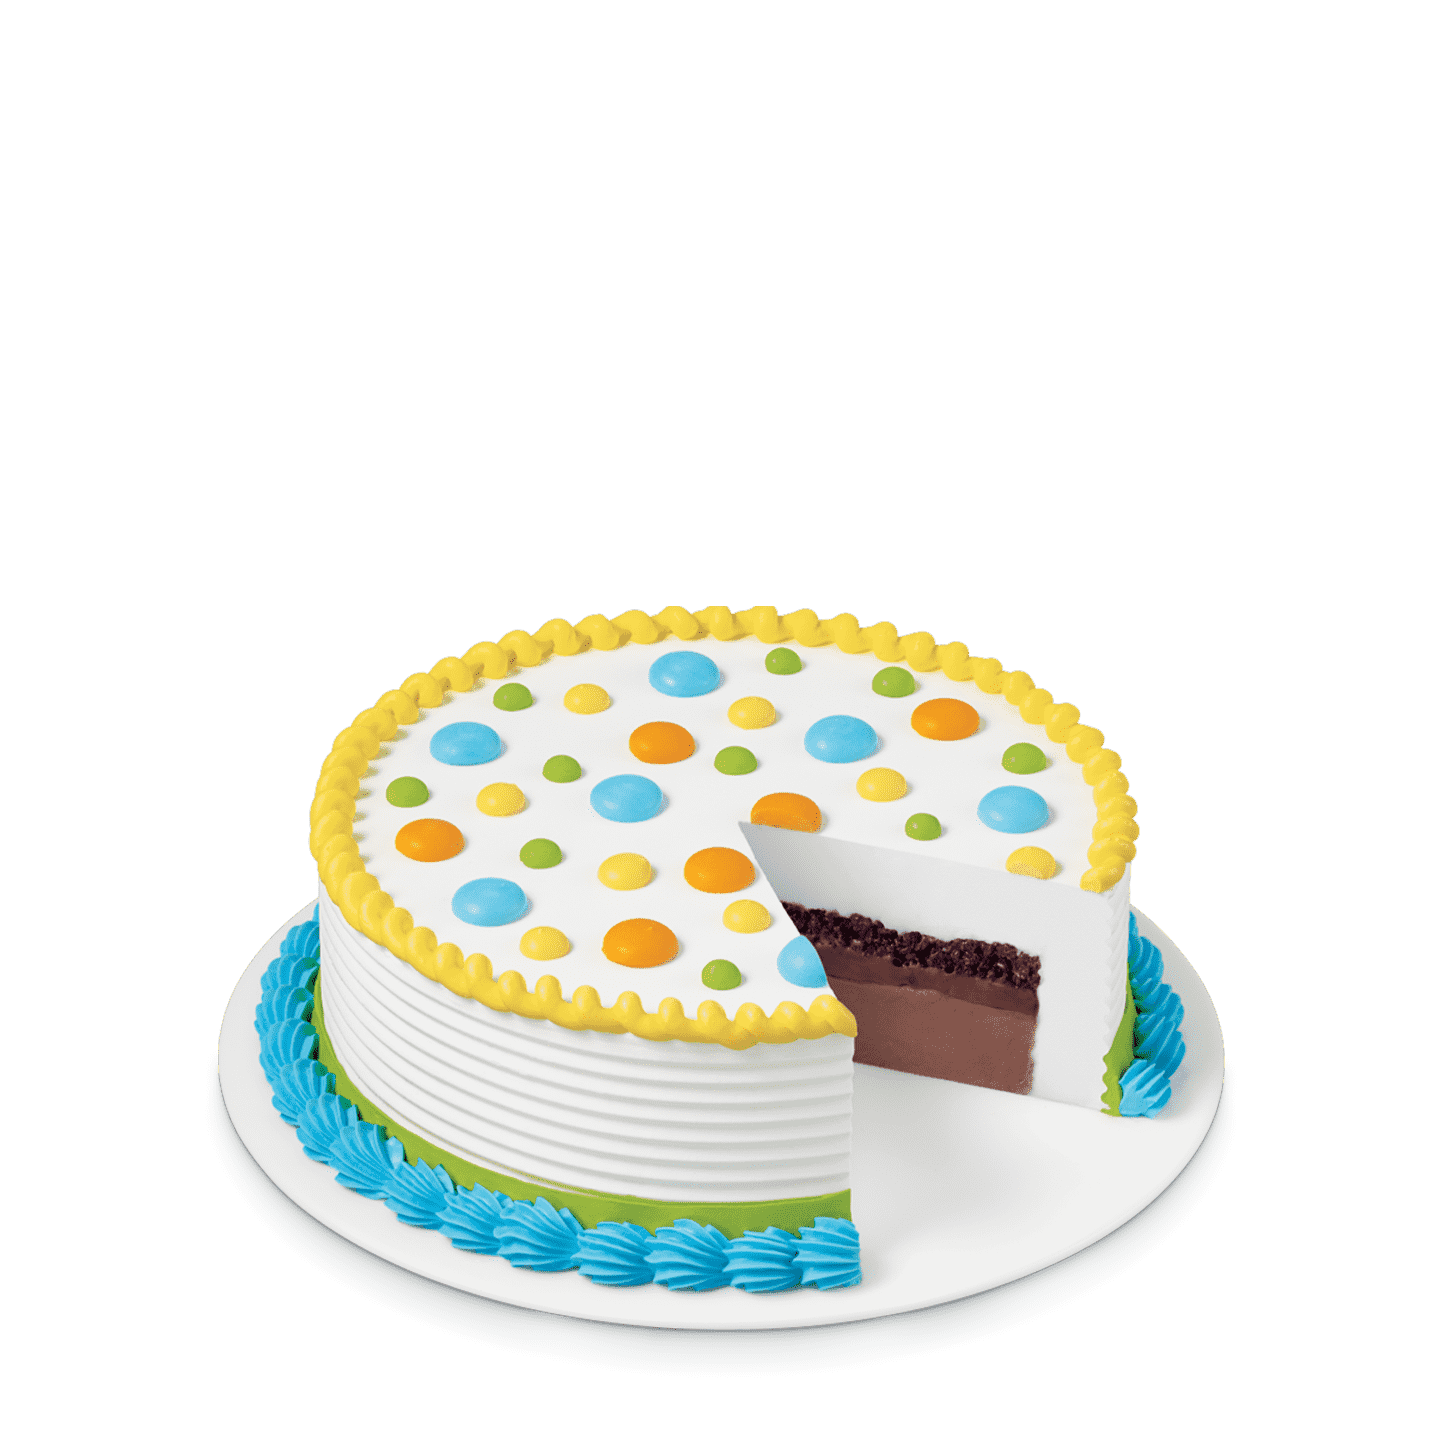 Ms. round cake